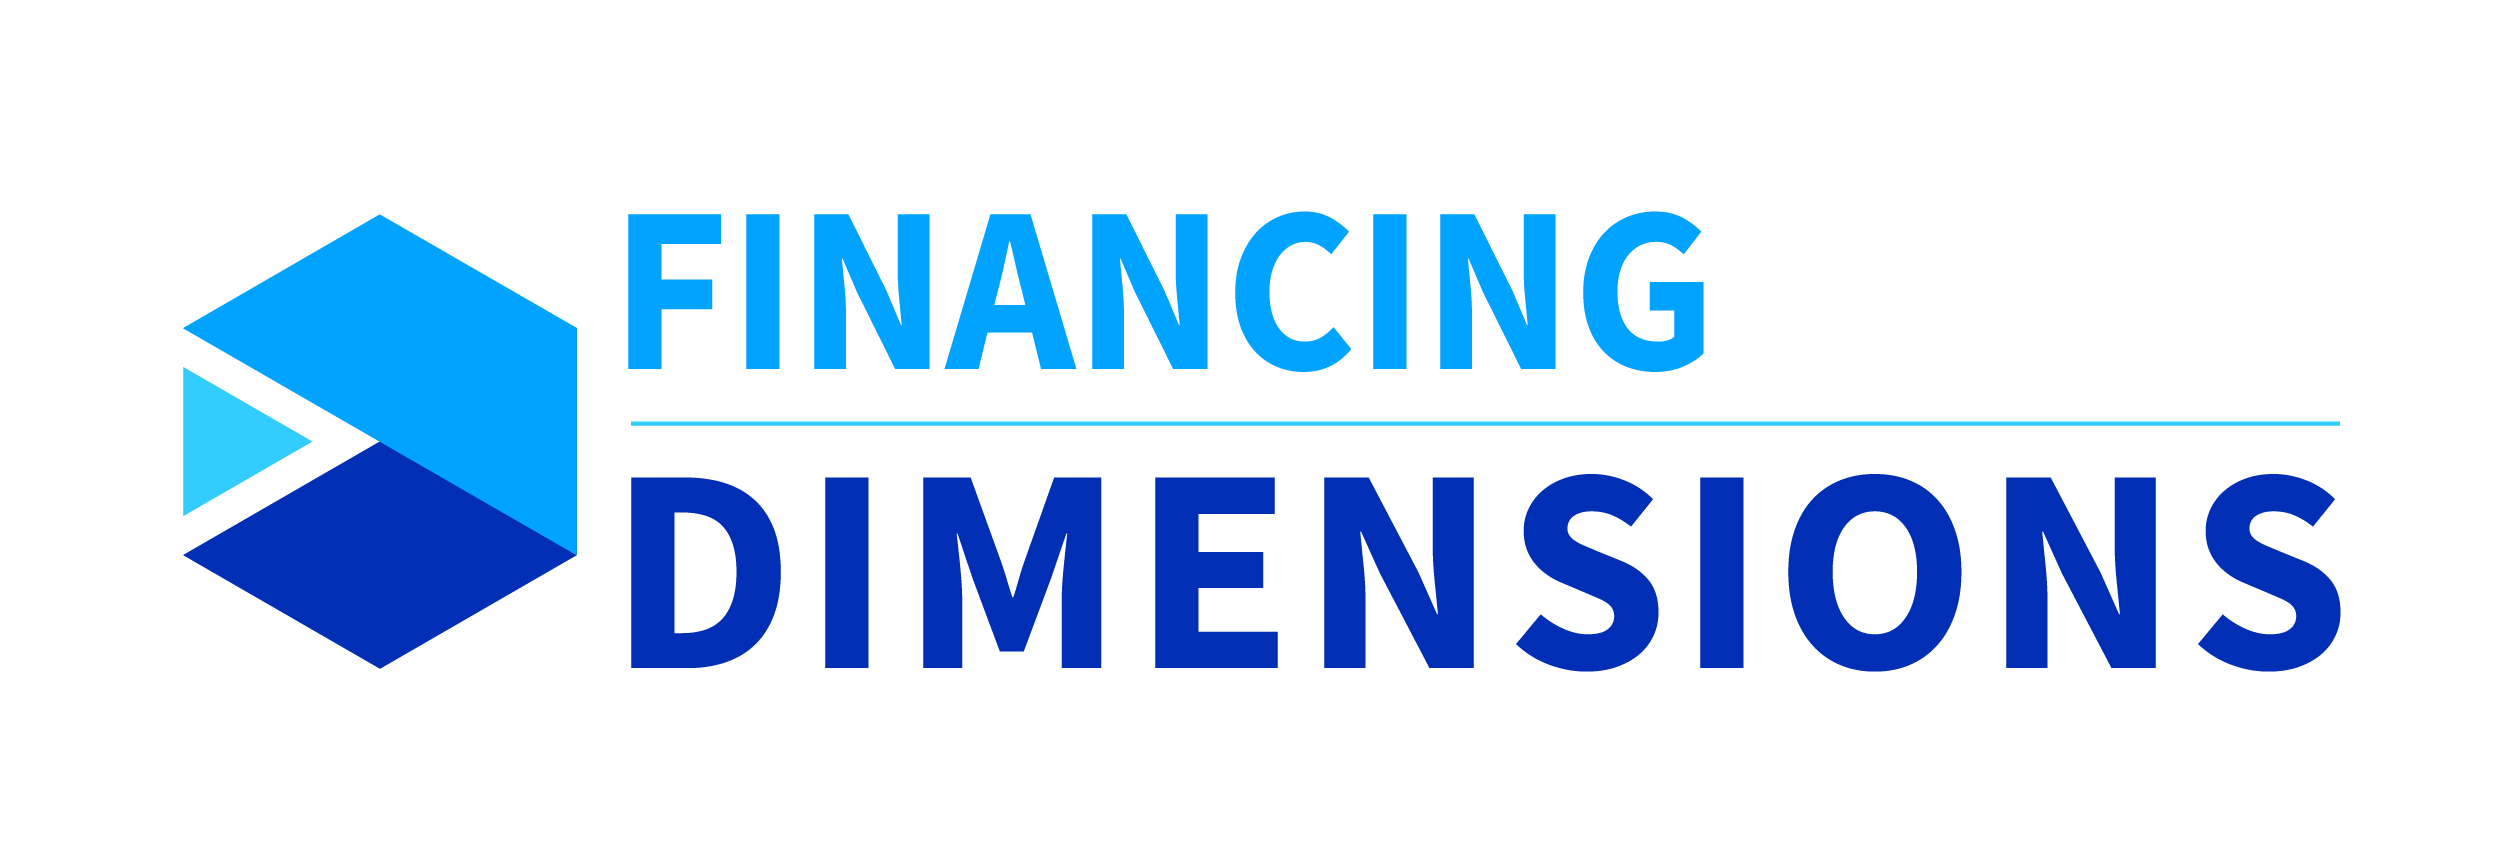 Dimensions de financement - Acceltech Pte Ltd